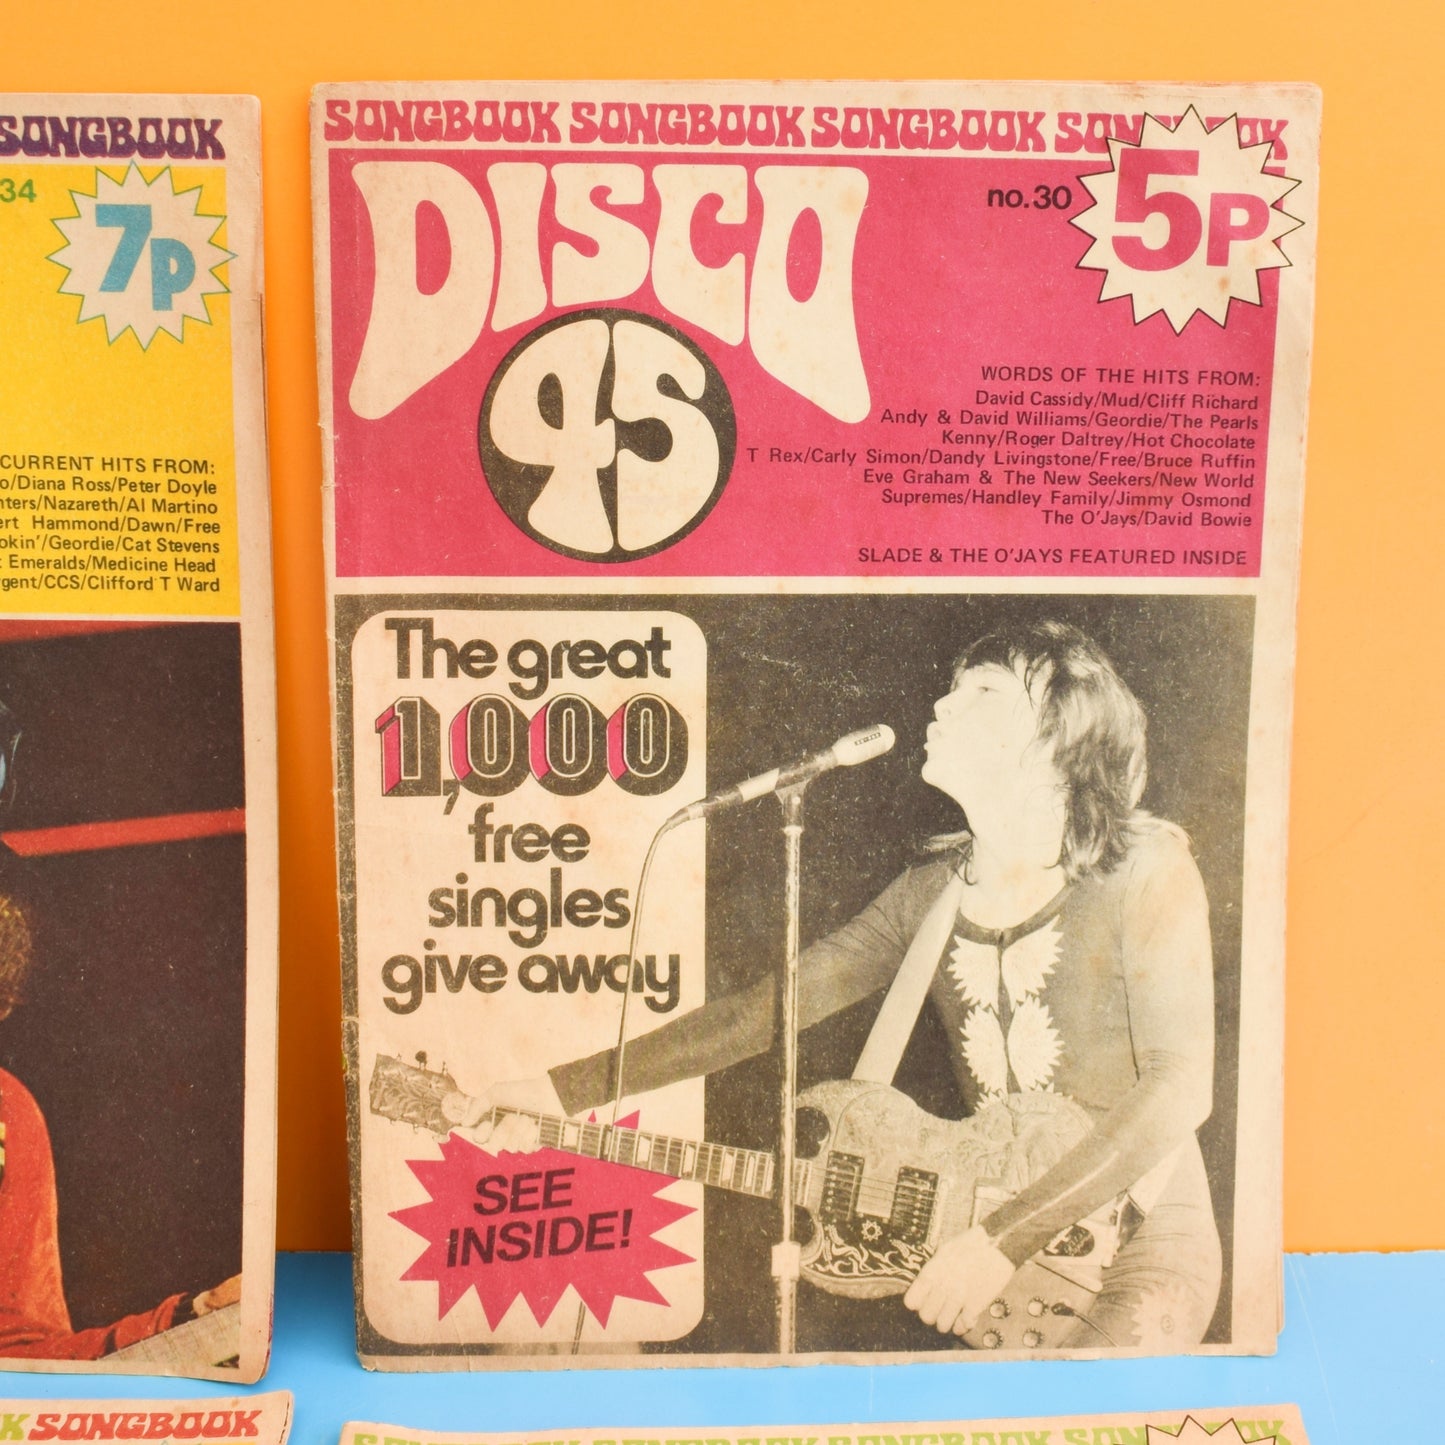 Vintage 1970s Disco 45 Magazines x7